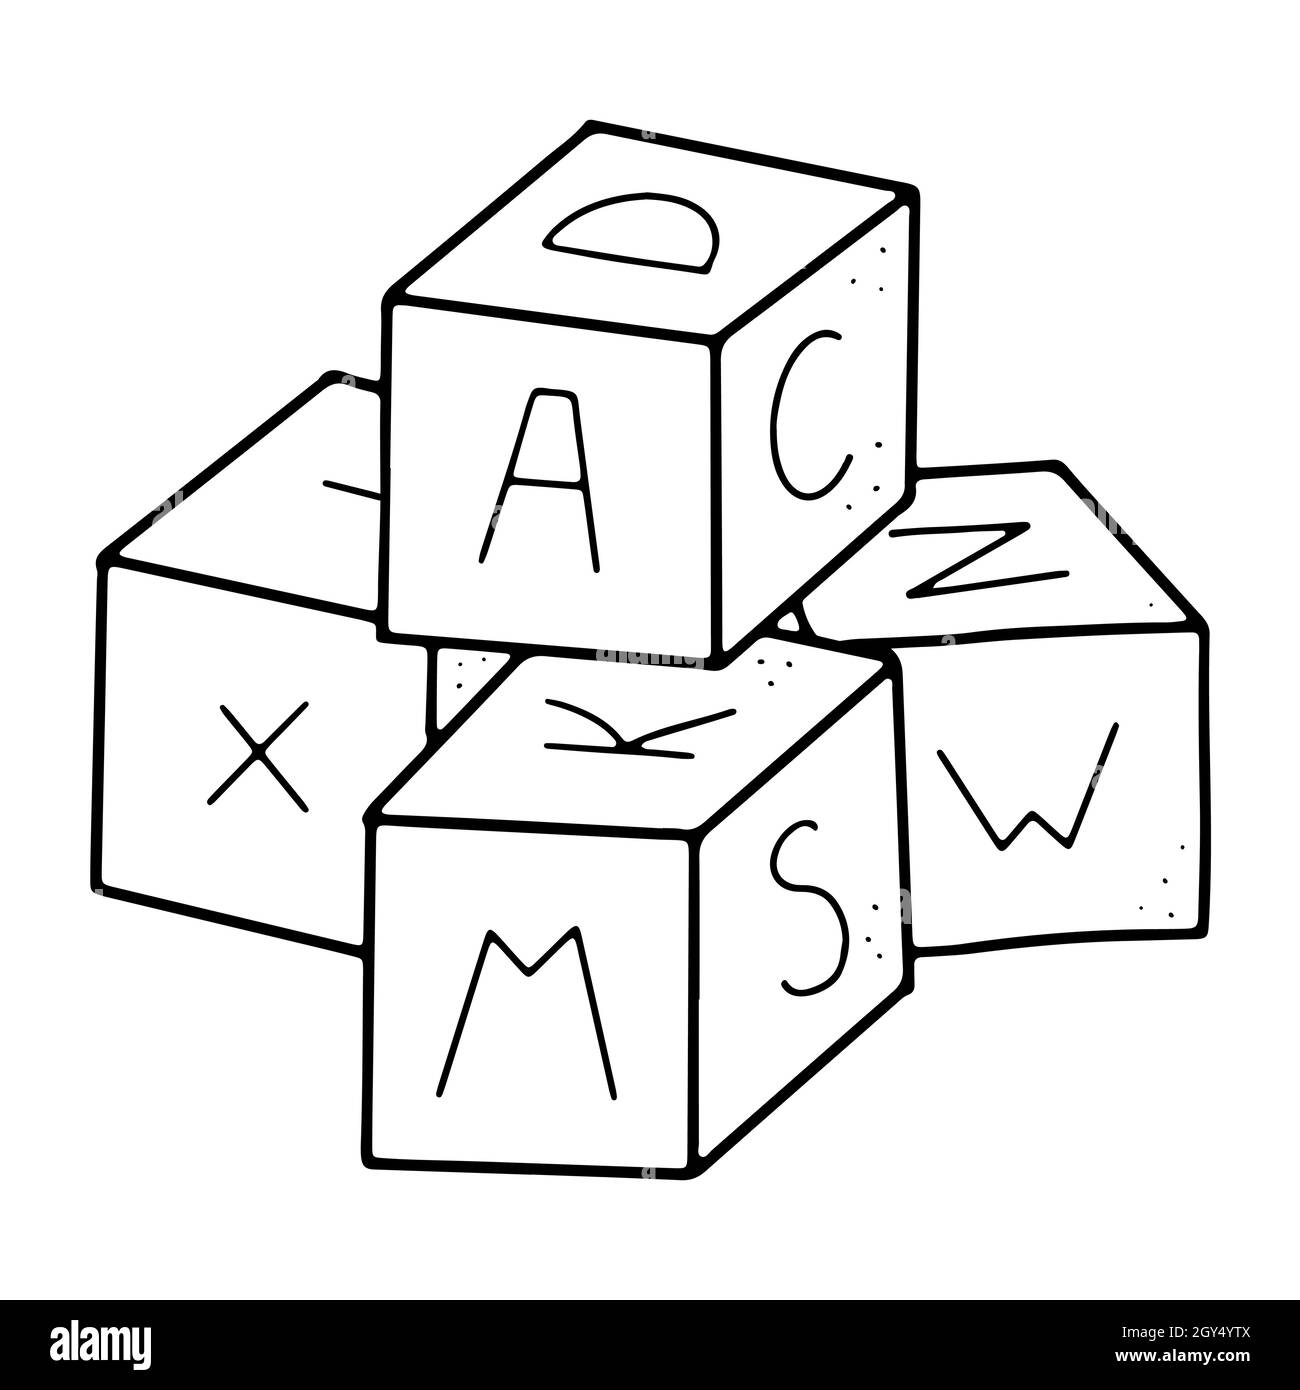 Kinder-Block-Spielzeug im Doodle-Stil mit Alphabet auf ihnen im Vektorformat Stock Vektor